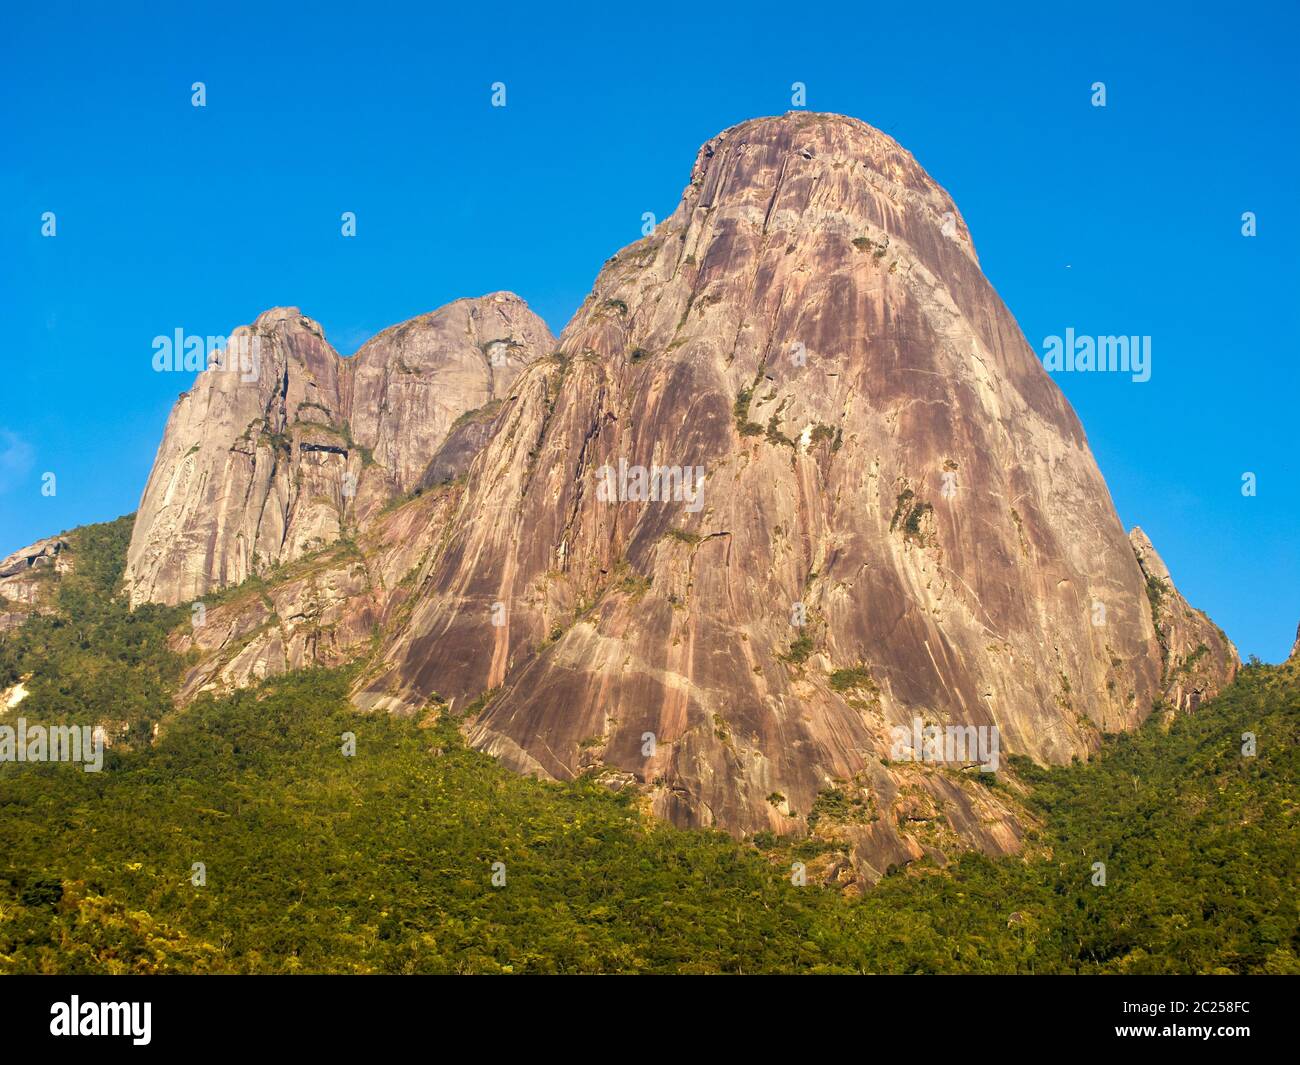 Rock mountains in up country Rio de Janeiro Stock Photo